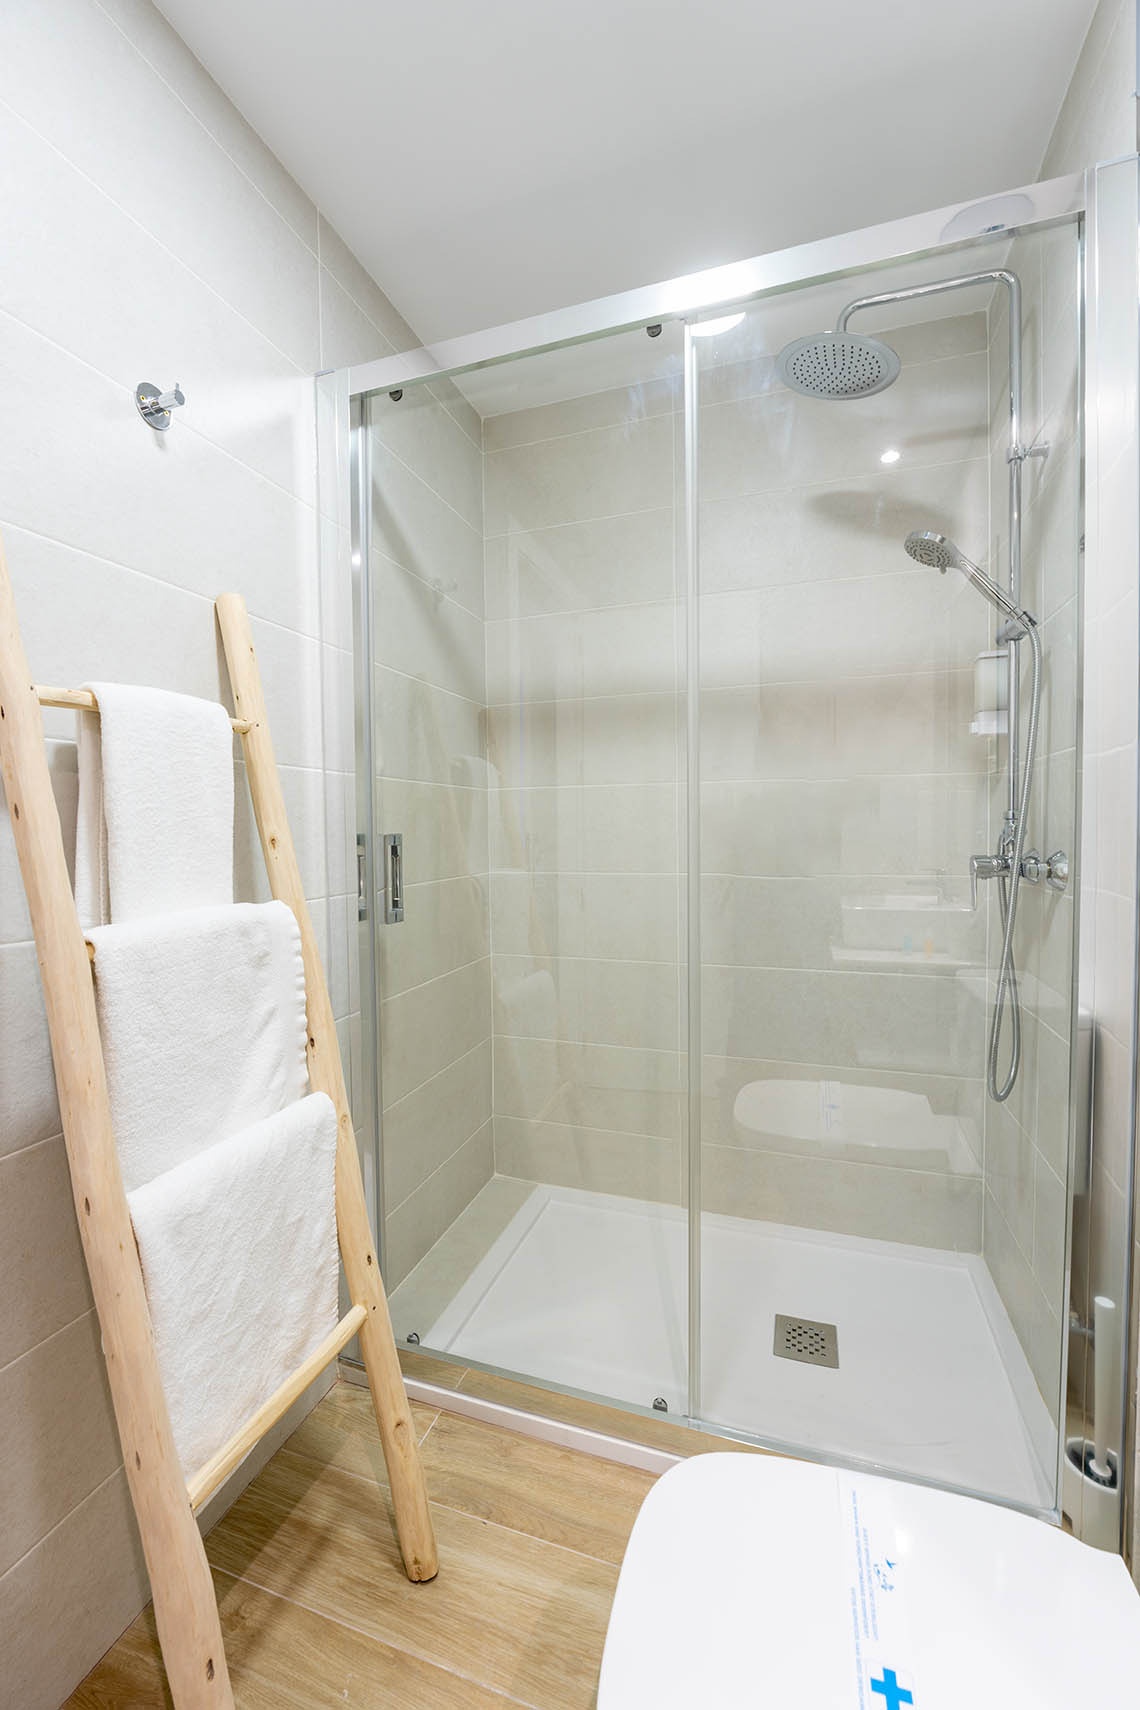 un baño con una escalera de madera y una ducha de vidrio